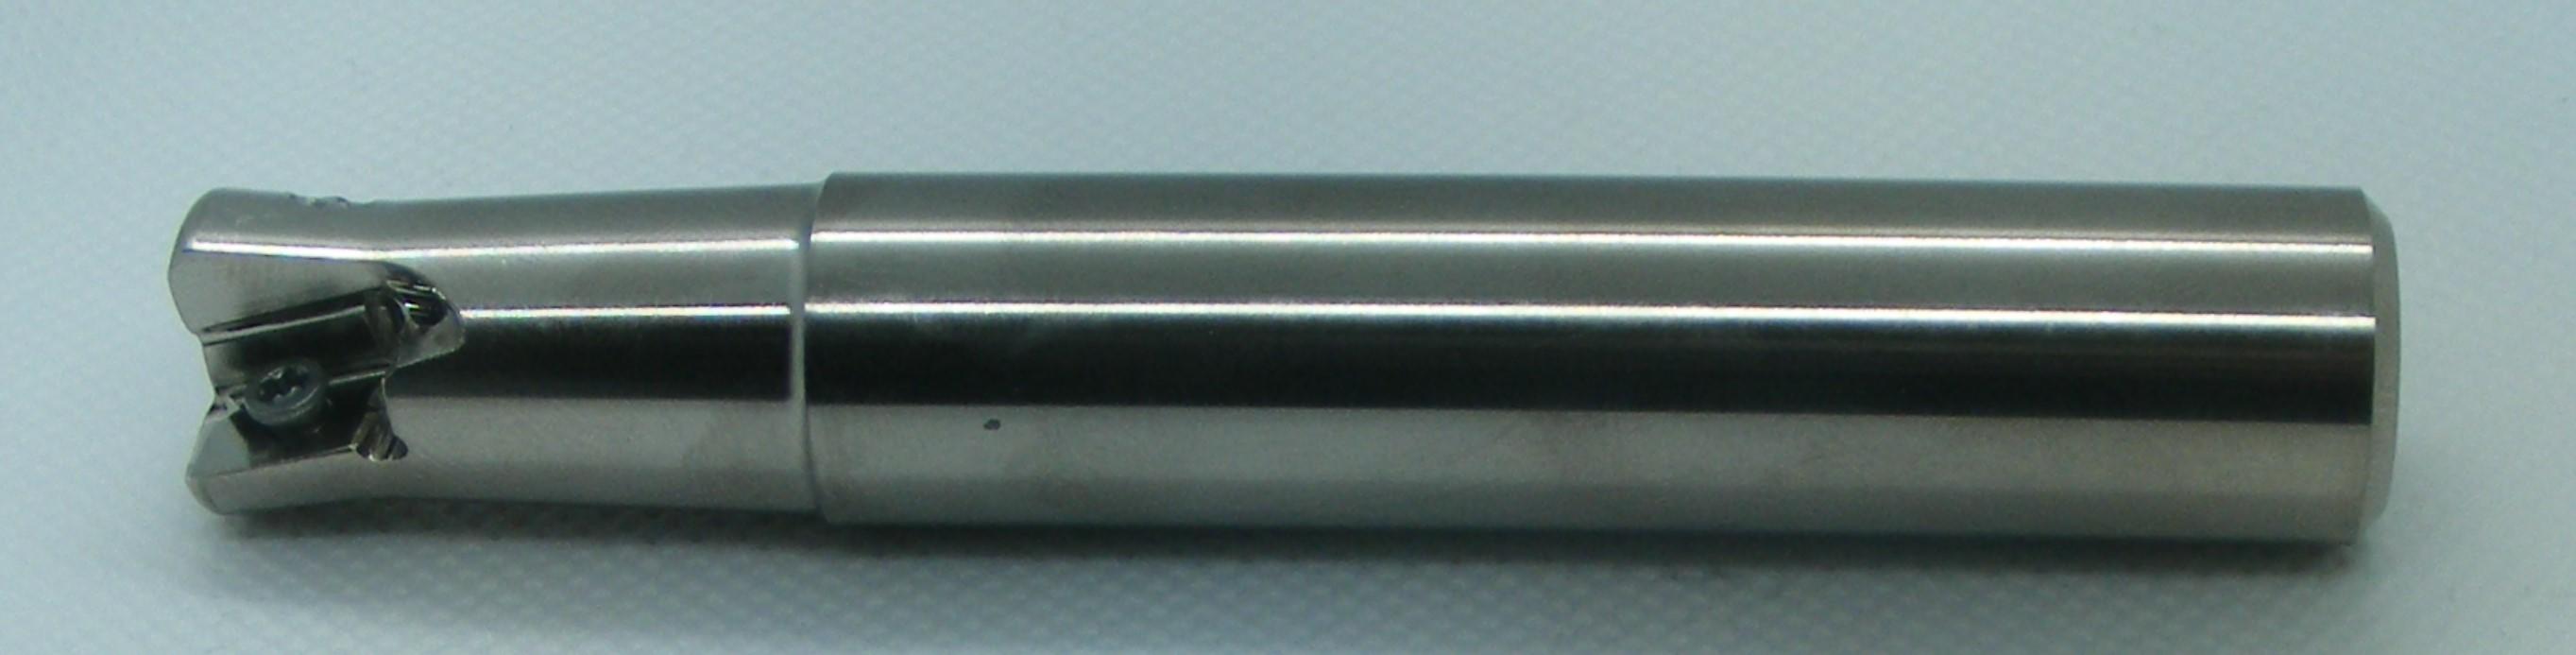 京セラ MFH Mini エンドミル 標準シャンク MFH32-S32-03-5T